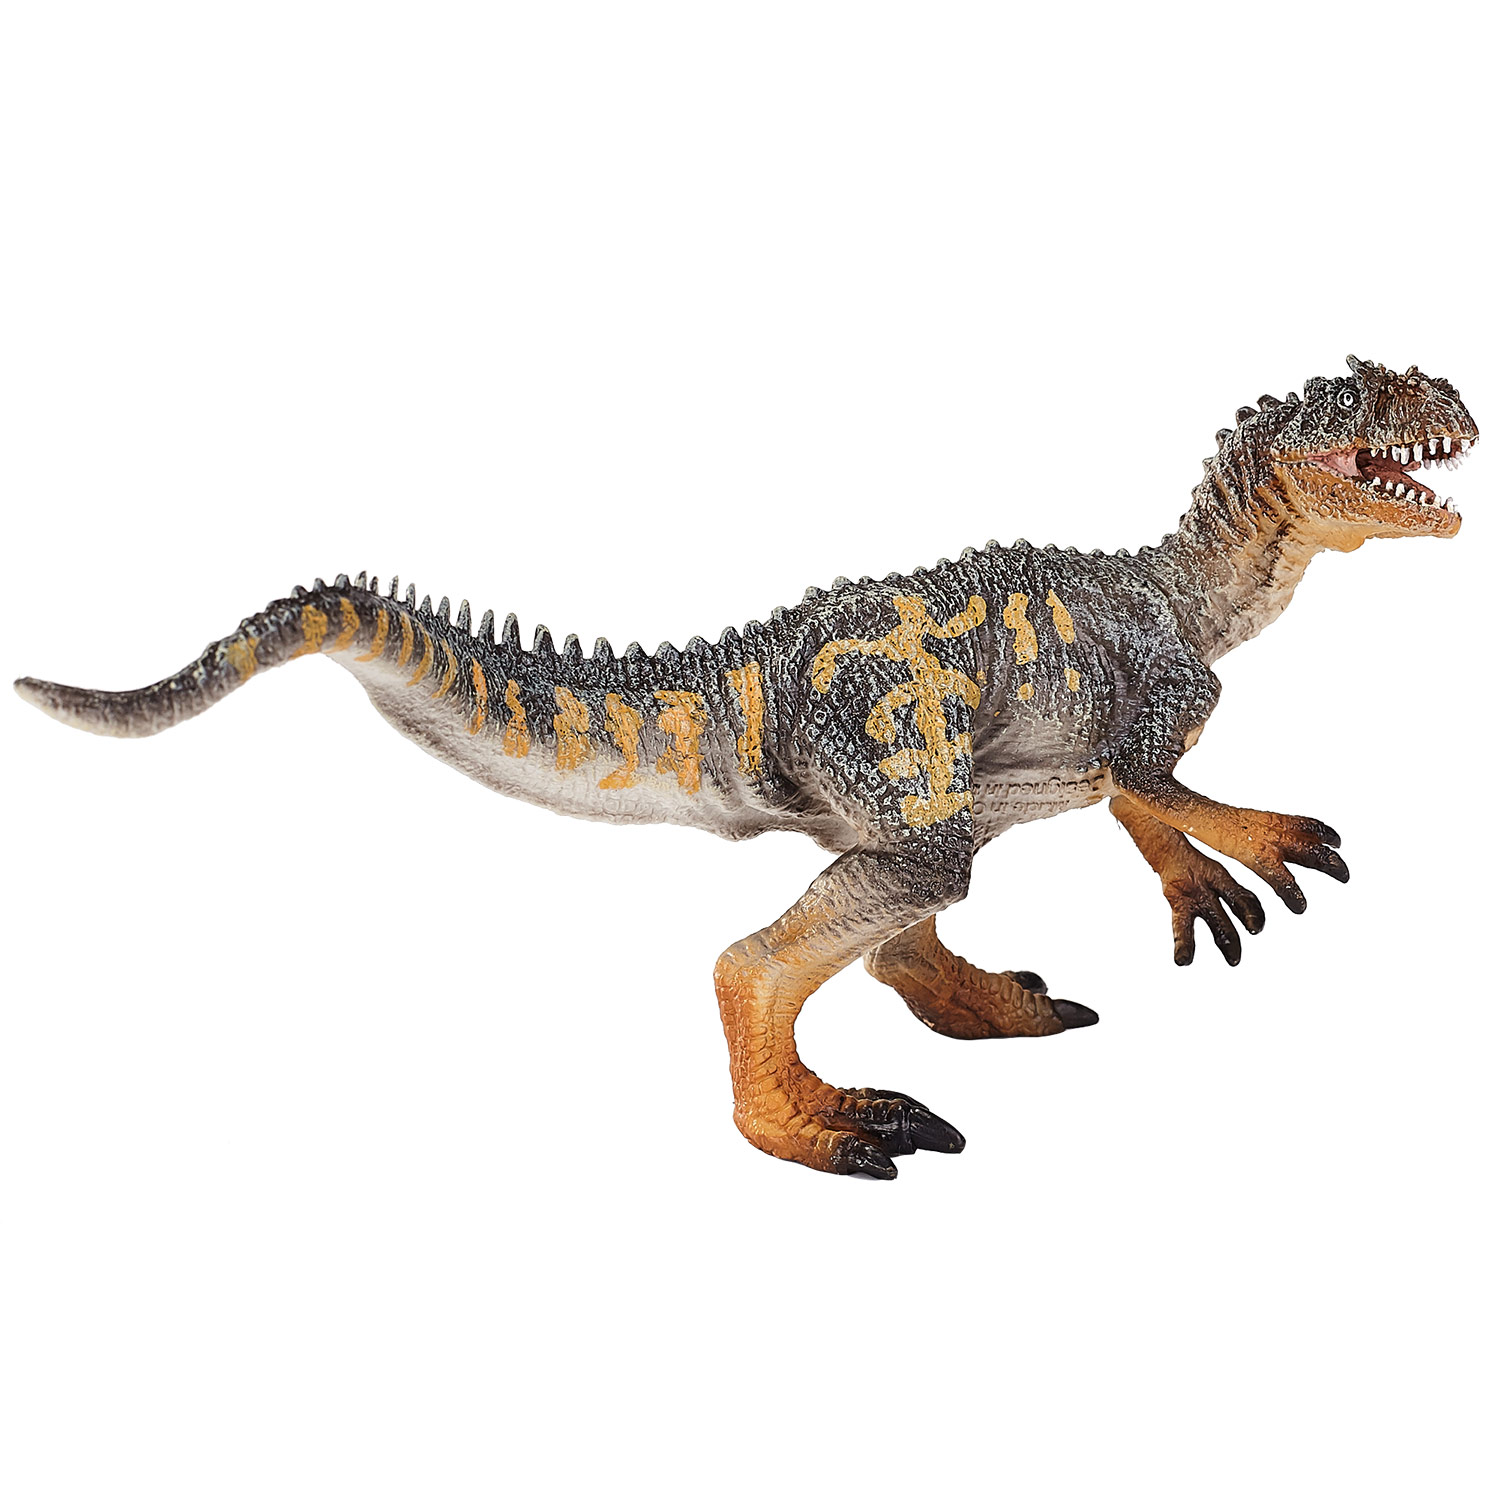 Mojo Prehistorie Allosaurus - 387274